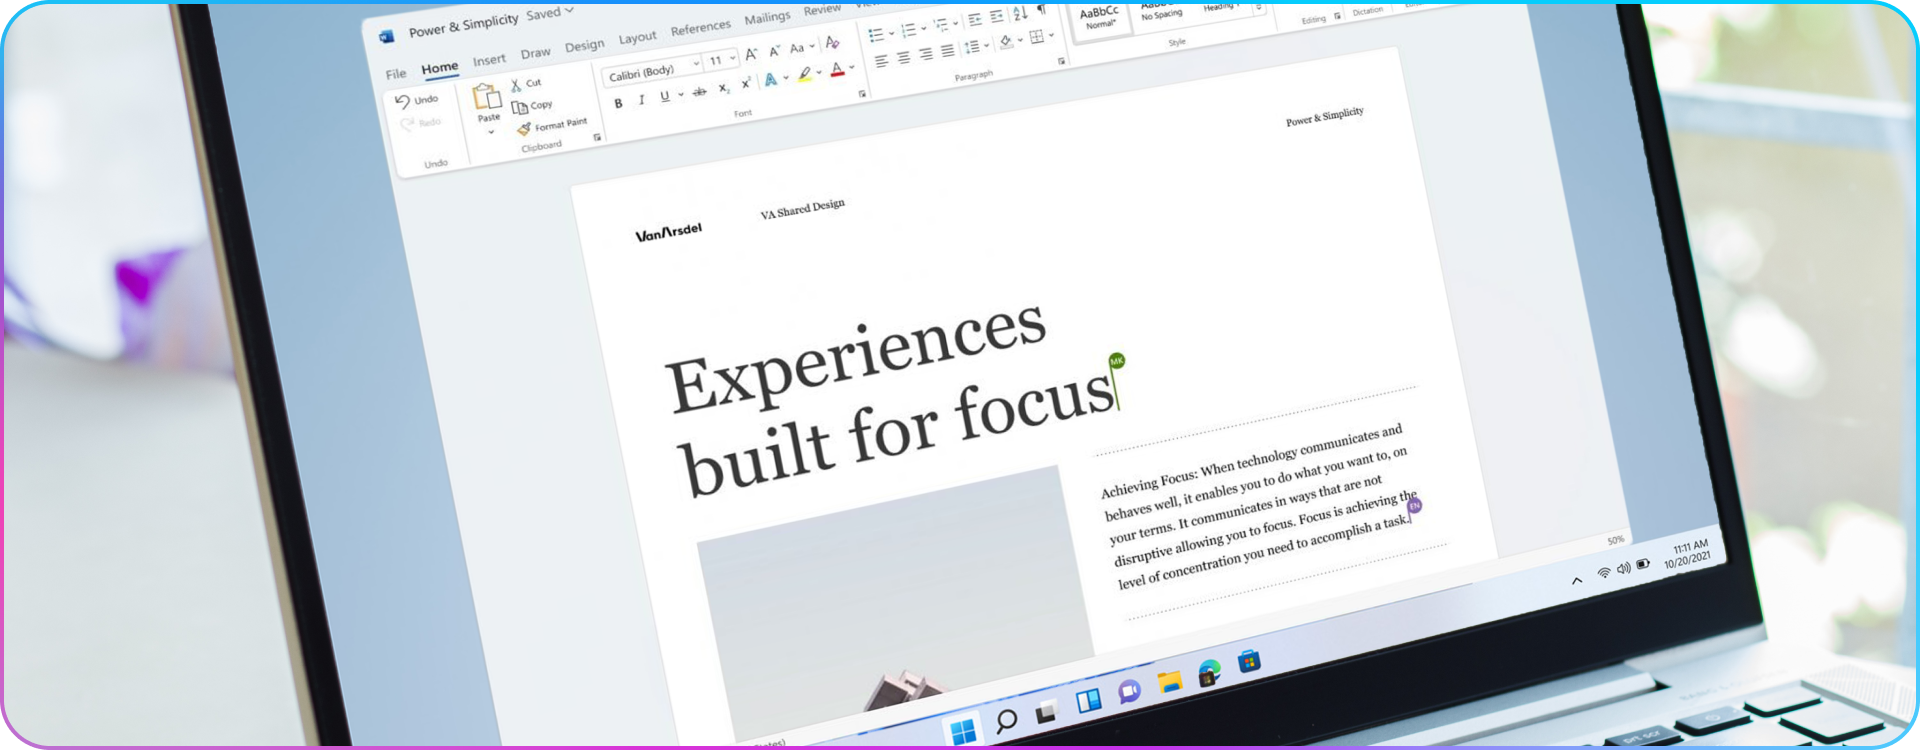 Microsoft Office 2021: czym różni się od starszych wersji?